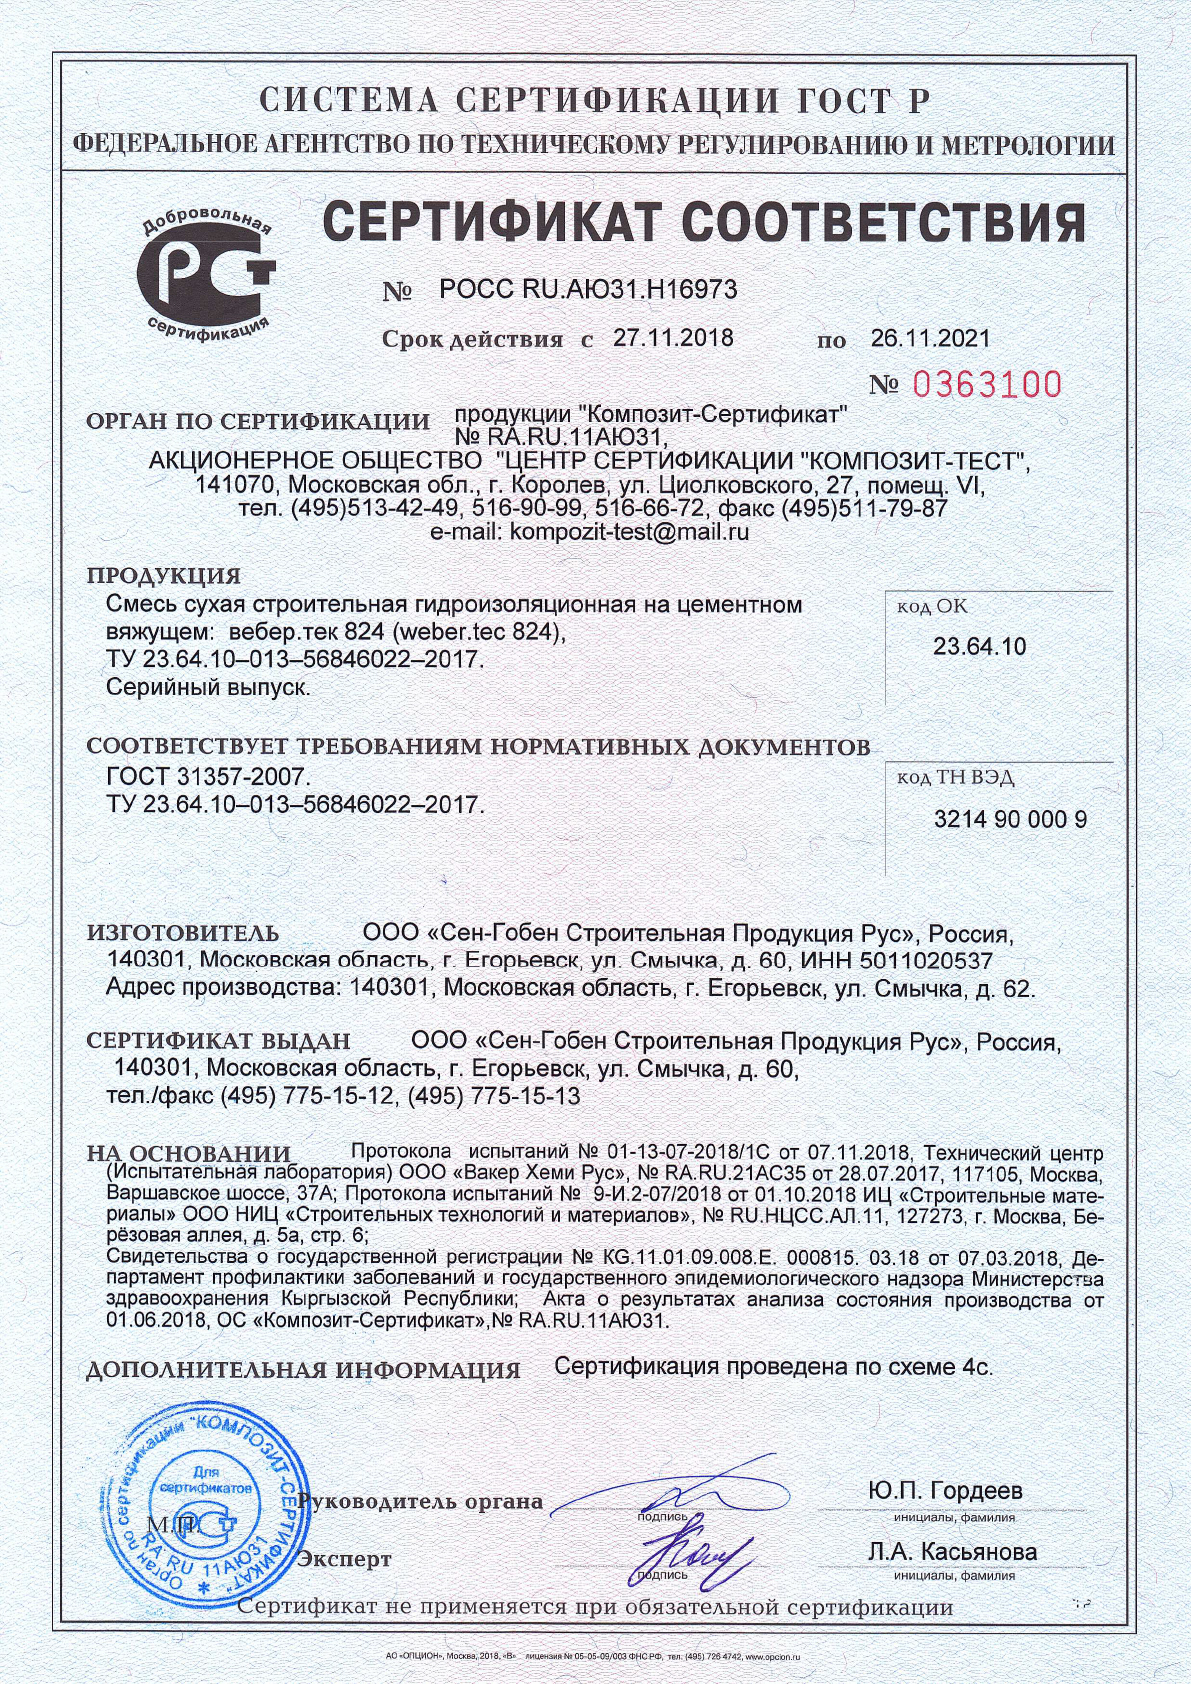 Сертификат cоответствия на смесь сухую строительную гидроизоляционную вебер.тек 824 срок действия до 26.11.2021